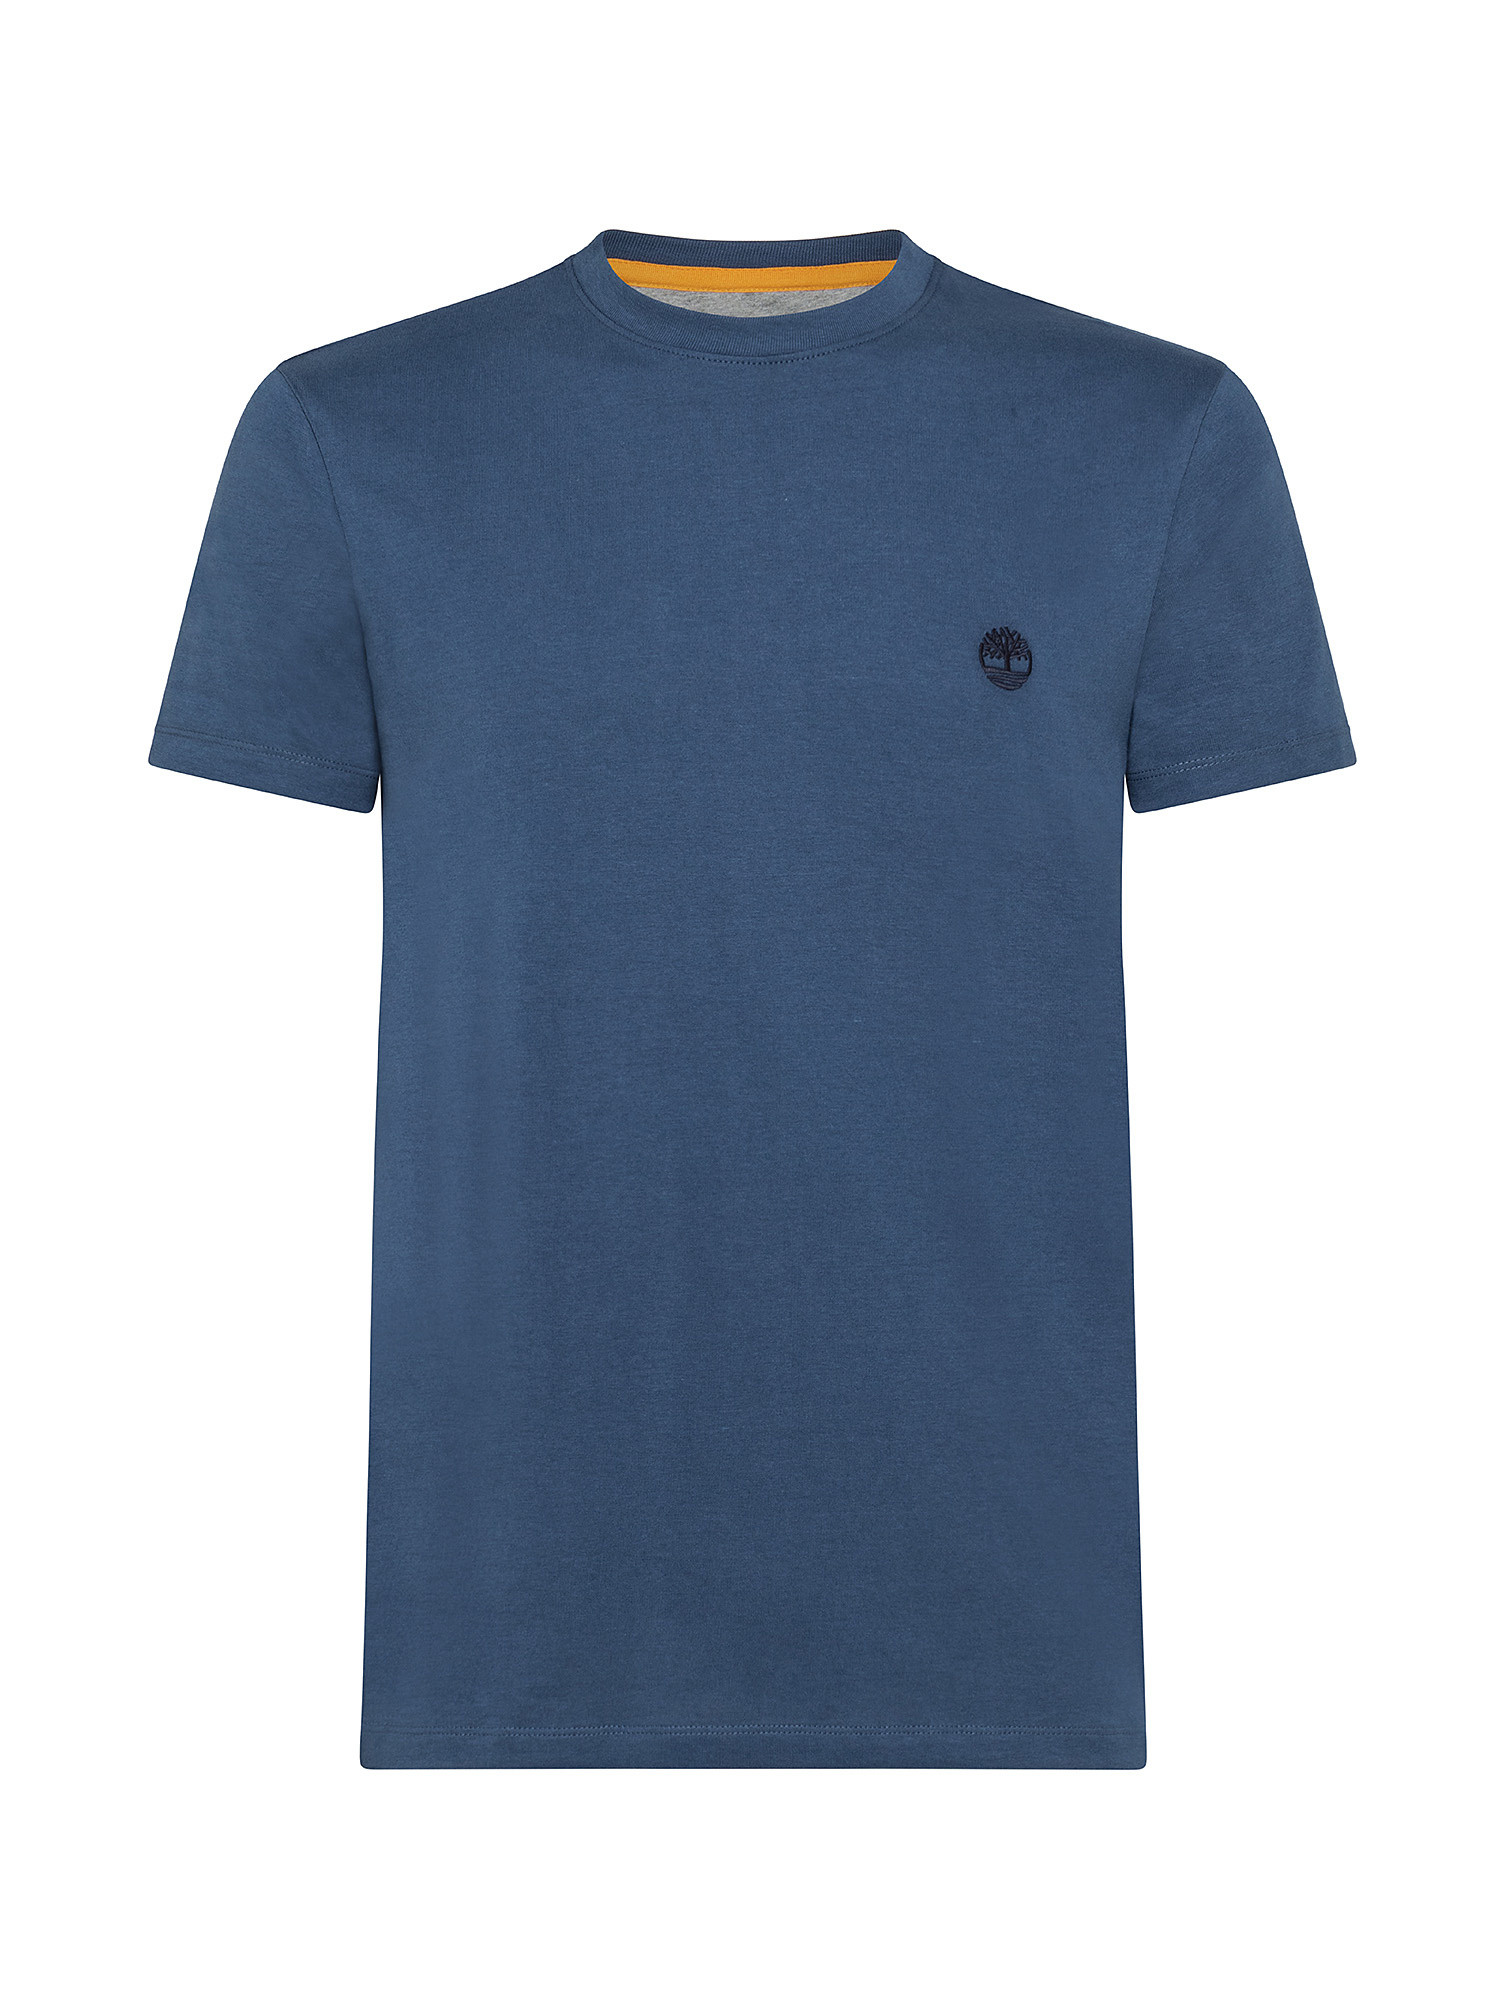 Dunstan River Men's T-Shirt, Blue, large image number 0